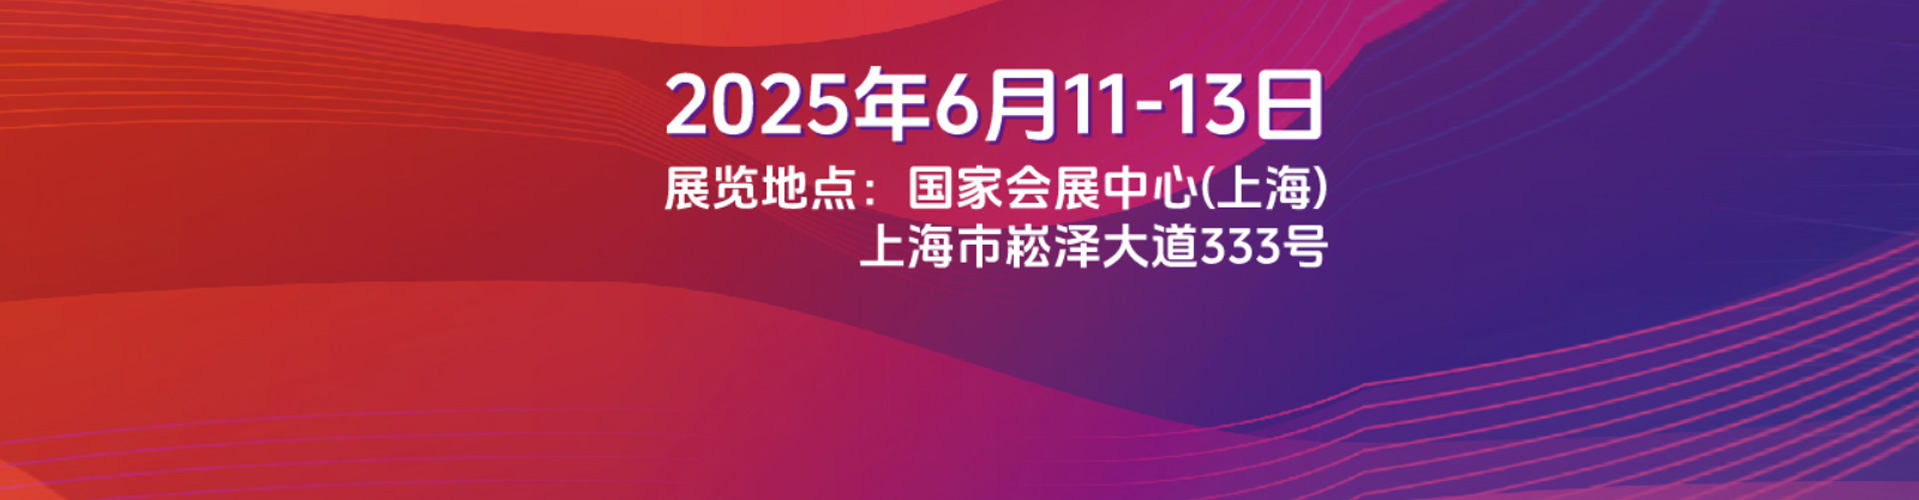 上海SNEC2020*十四届国际光伏储能及氢能燃料电池展览会暨论坛将在5月于上海新国际博览中心盛大召开！